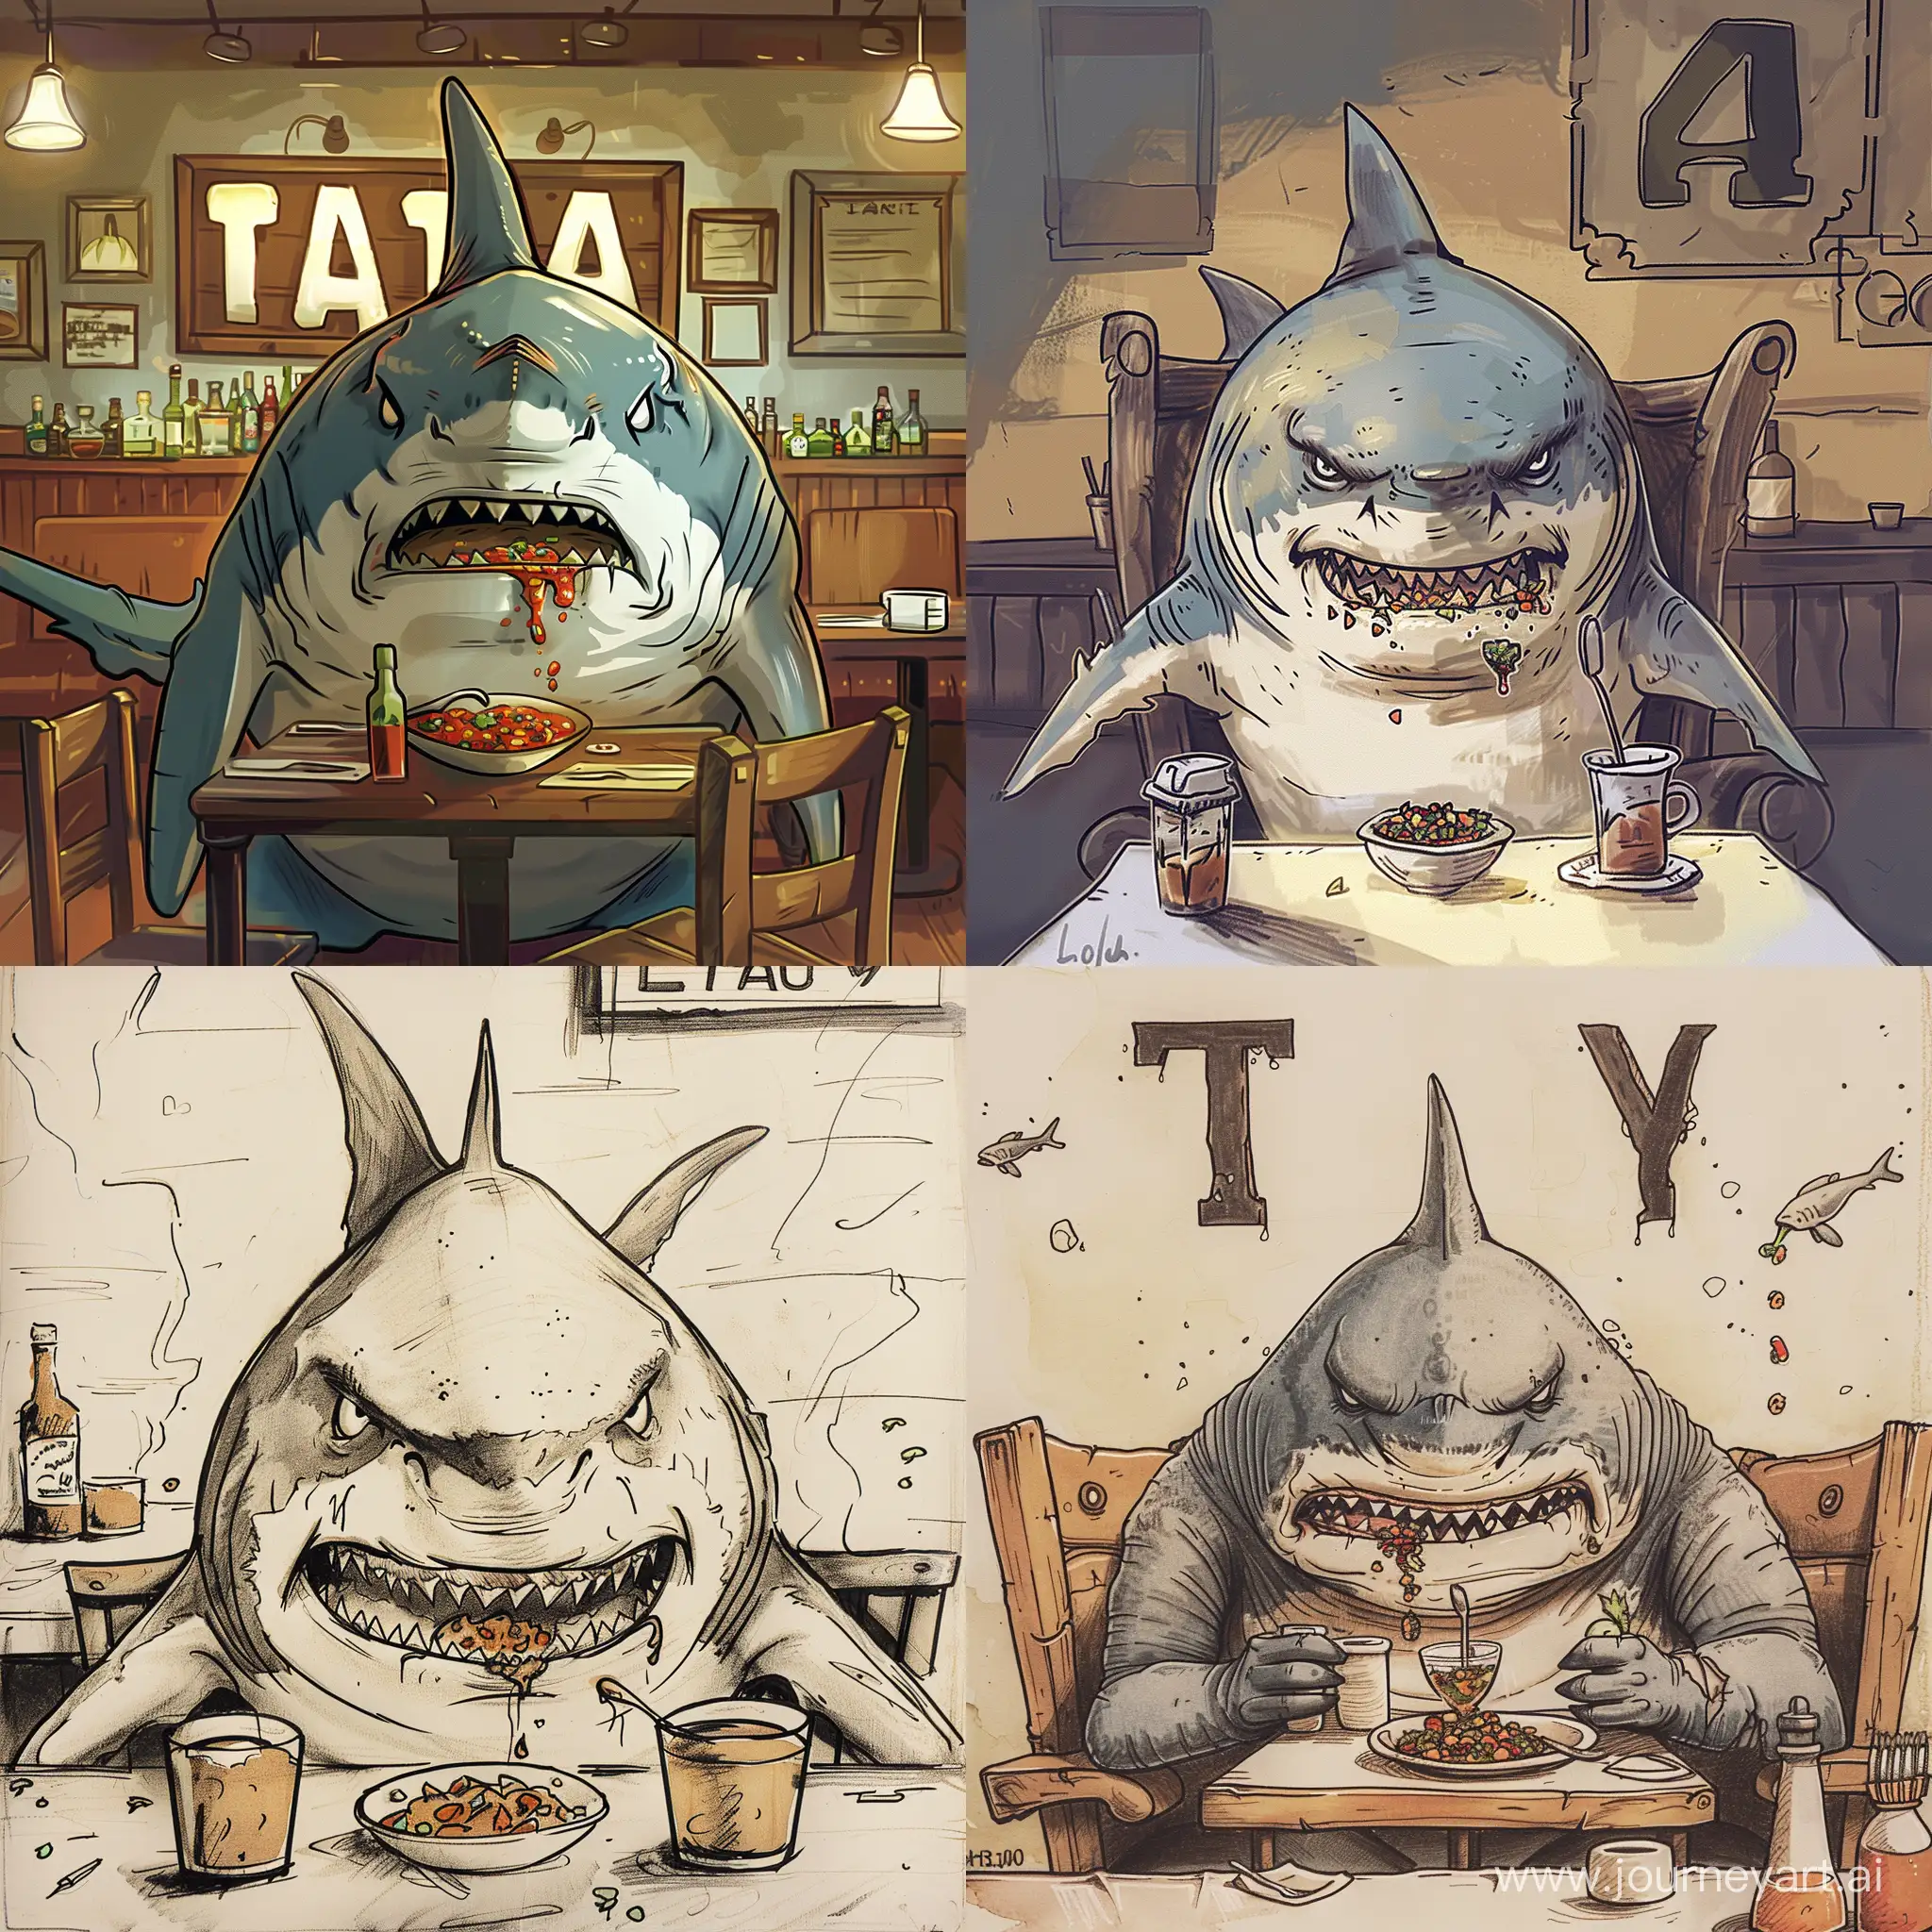 Ferocious-Shark-Devouring-Salsa-in-Restaurant-Scene